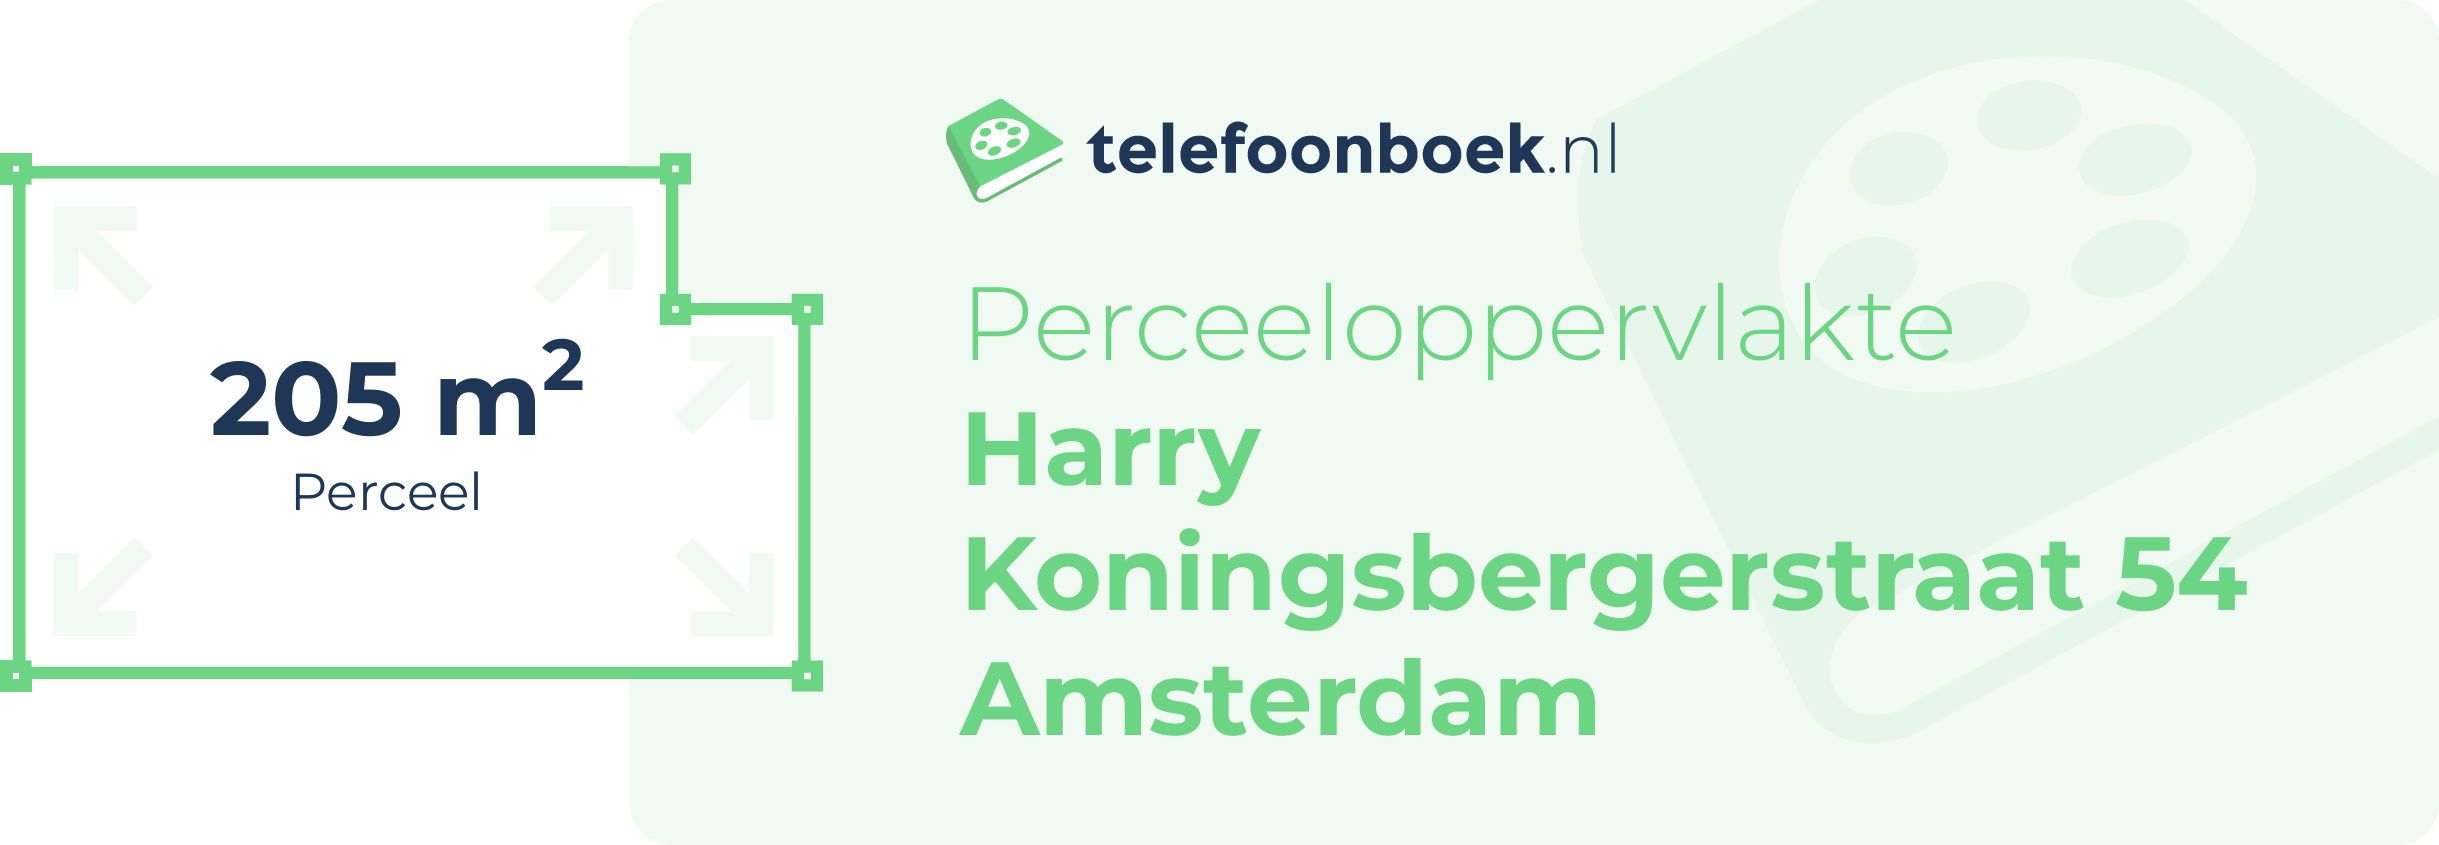 Perceeloppervlakte Harry Koningsbergerstraat 54 Amsterdam